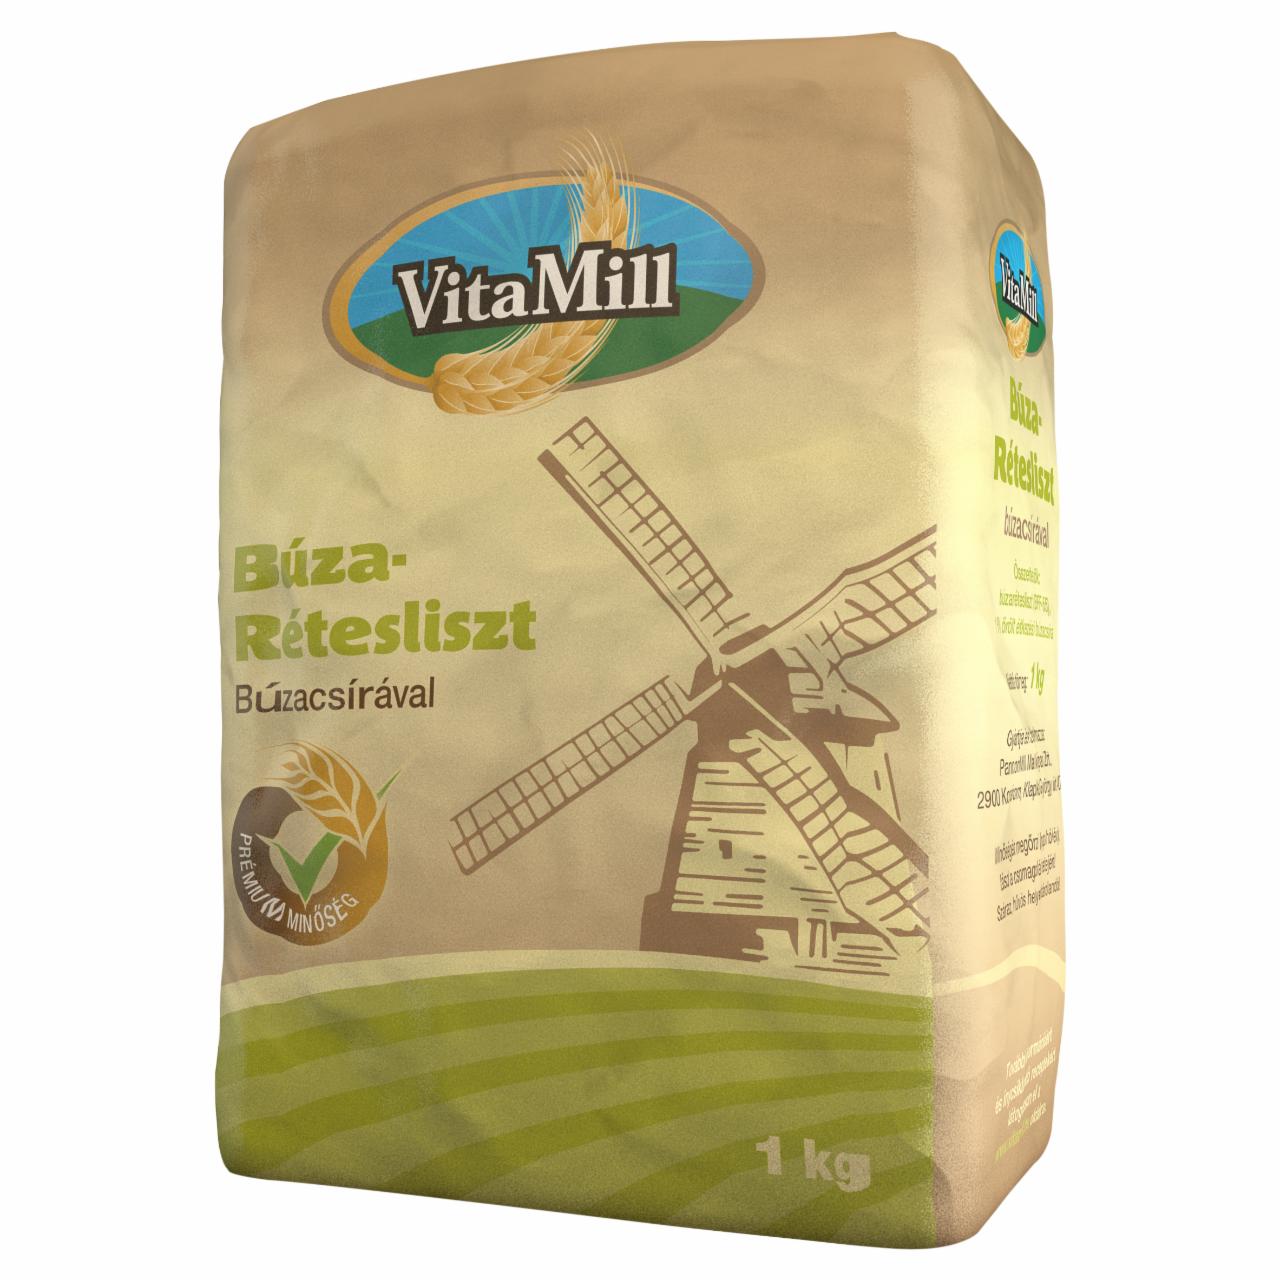 Képek - VitaMill búza rétesliszt búzacsírával 1 kg